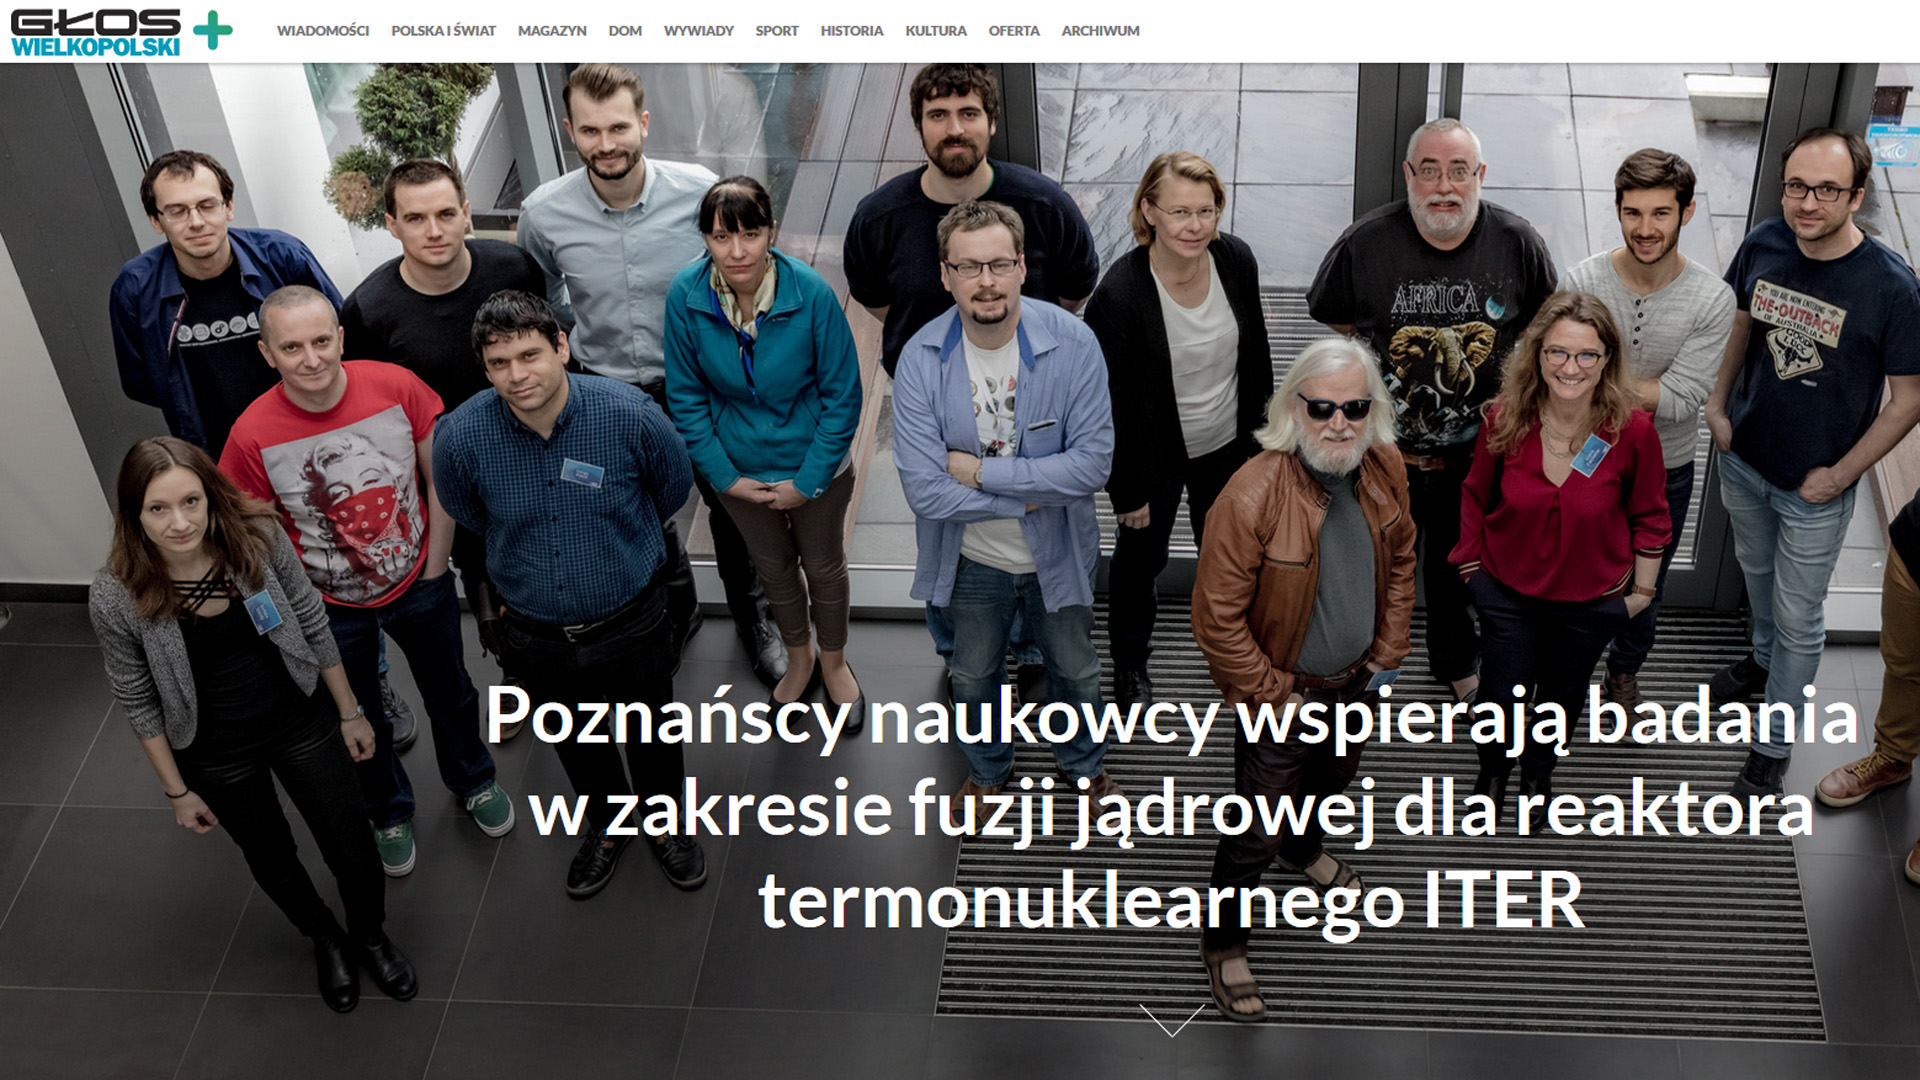 Piszą o nas: Poznańscy naukowcy wspierają badania w zakresie fuzji jądrowej dla reaktora termonuklearnego ITER